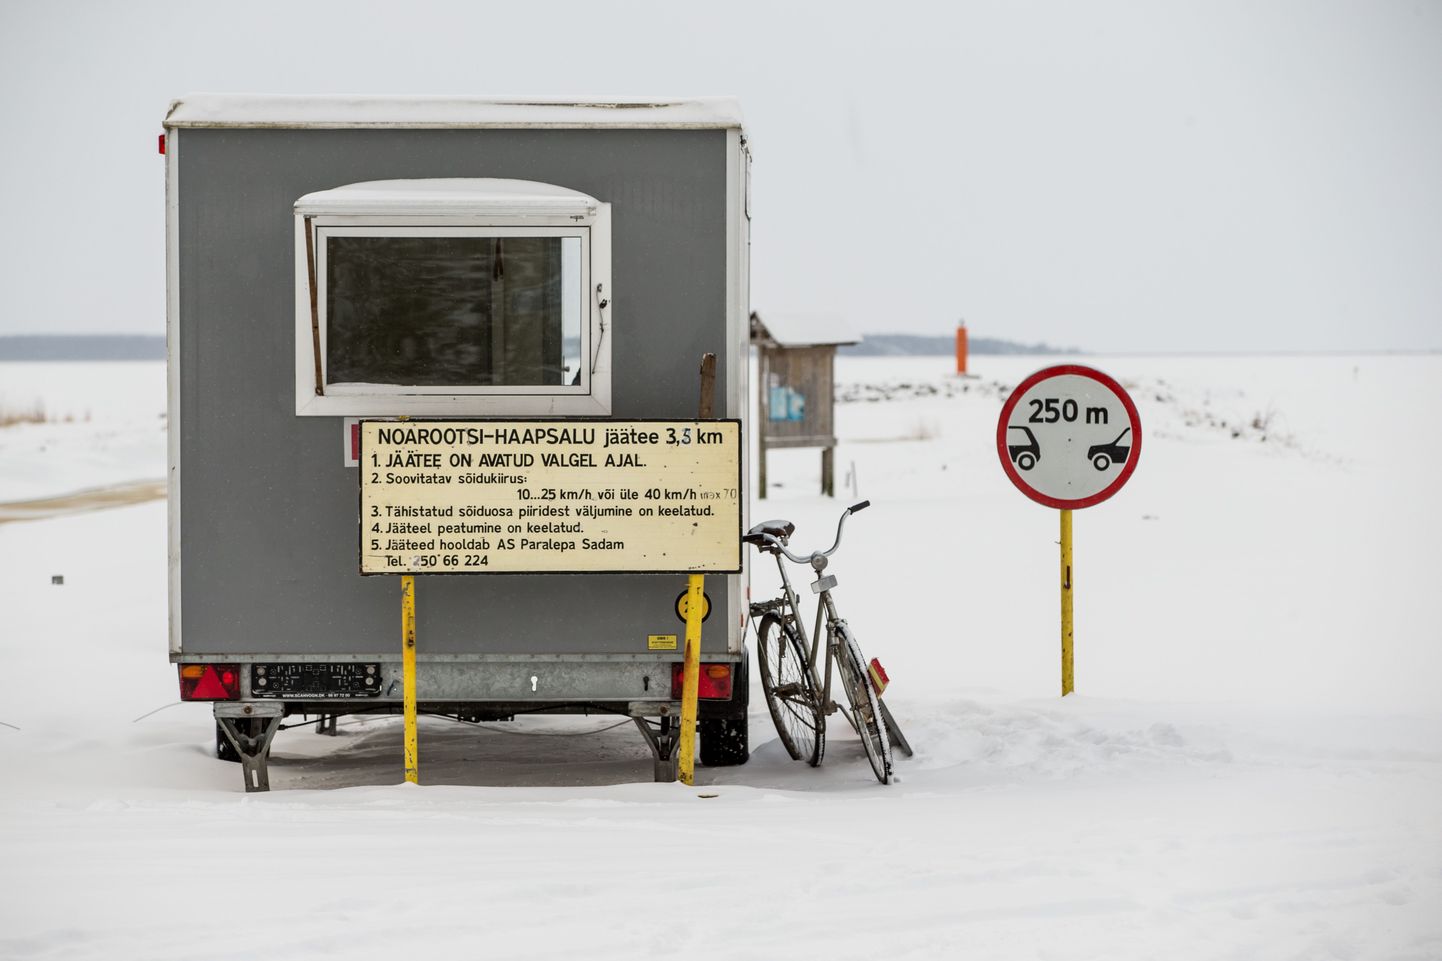 Haapsalu-Noarootsi jäätee. Külmal talvel võidakse just Läänemaa esimeste seas vooluvõrgust välja lülitada.